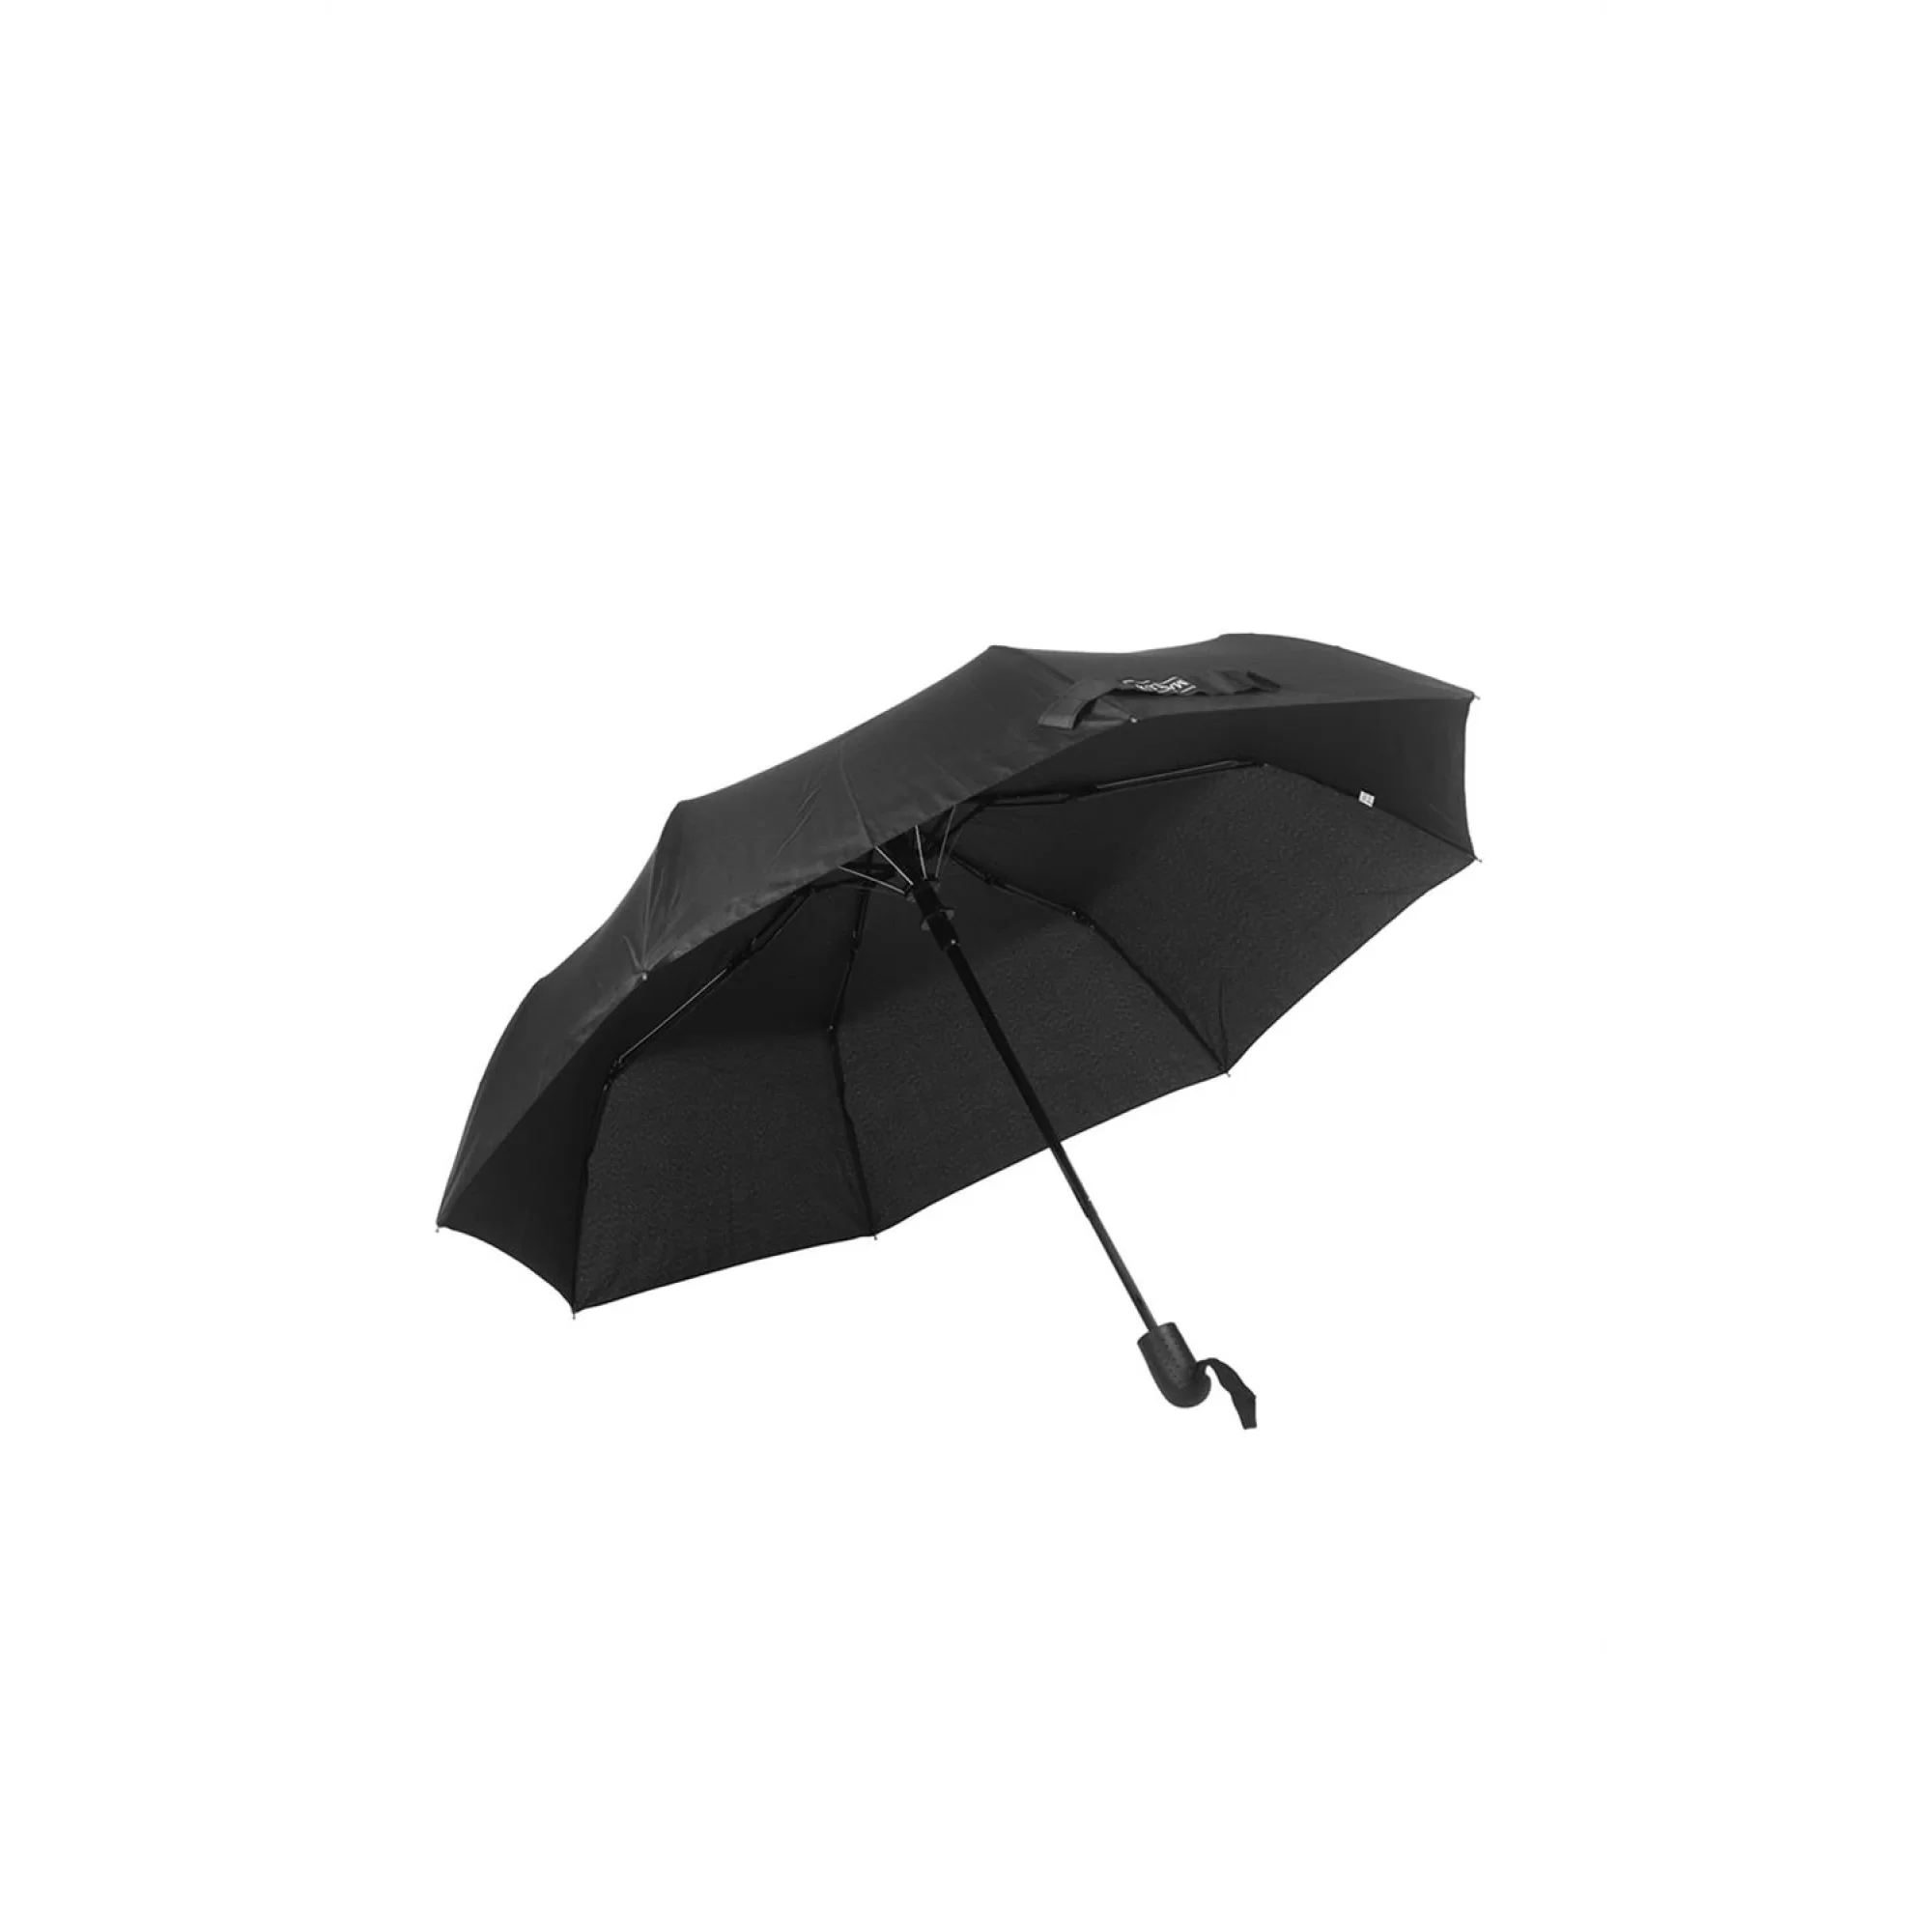 Marpaş Marlux MAR 112-M Şemsiye Desenli 8 Telli